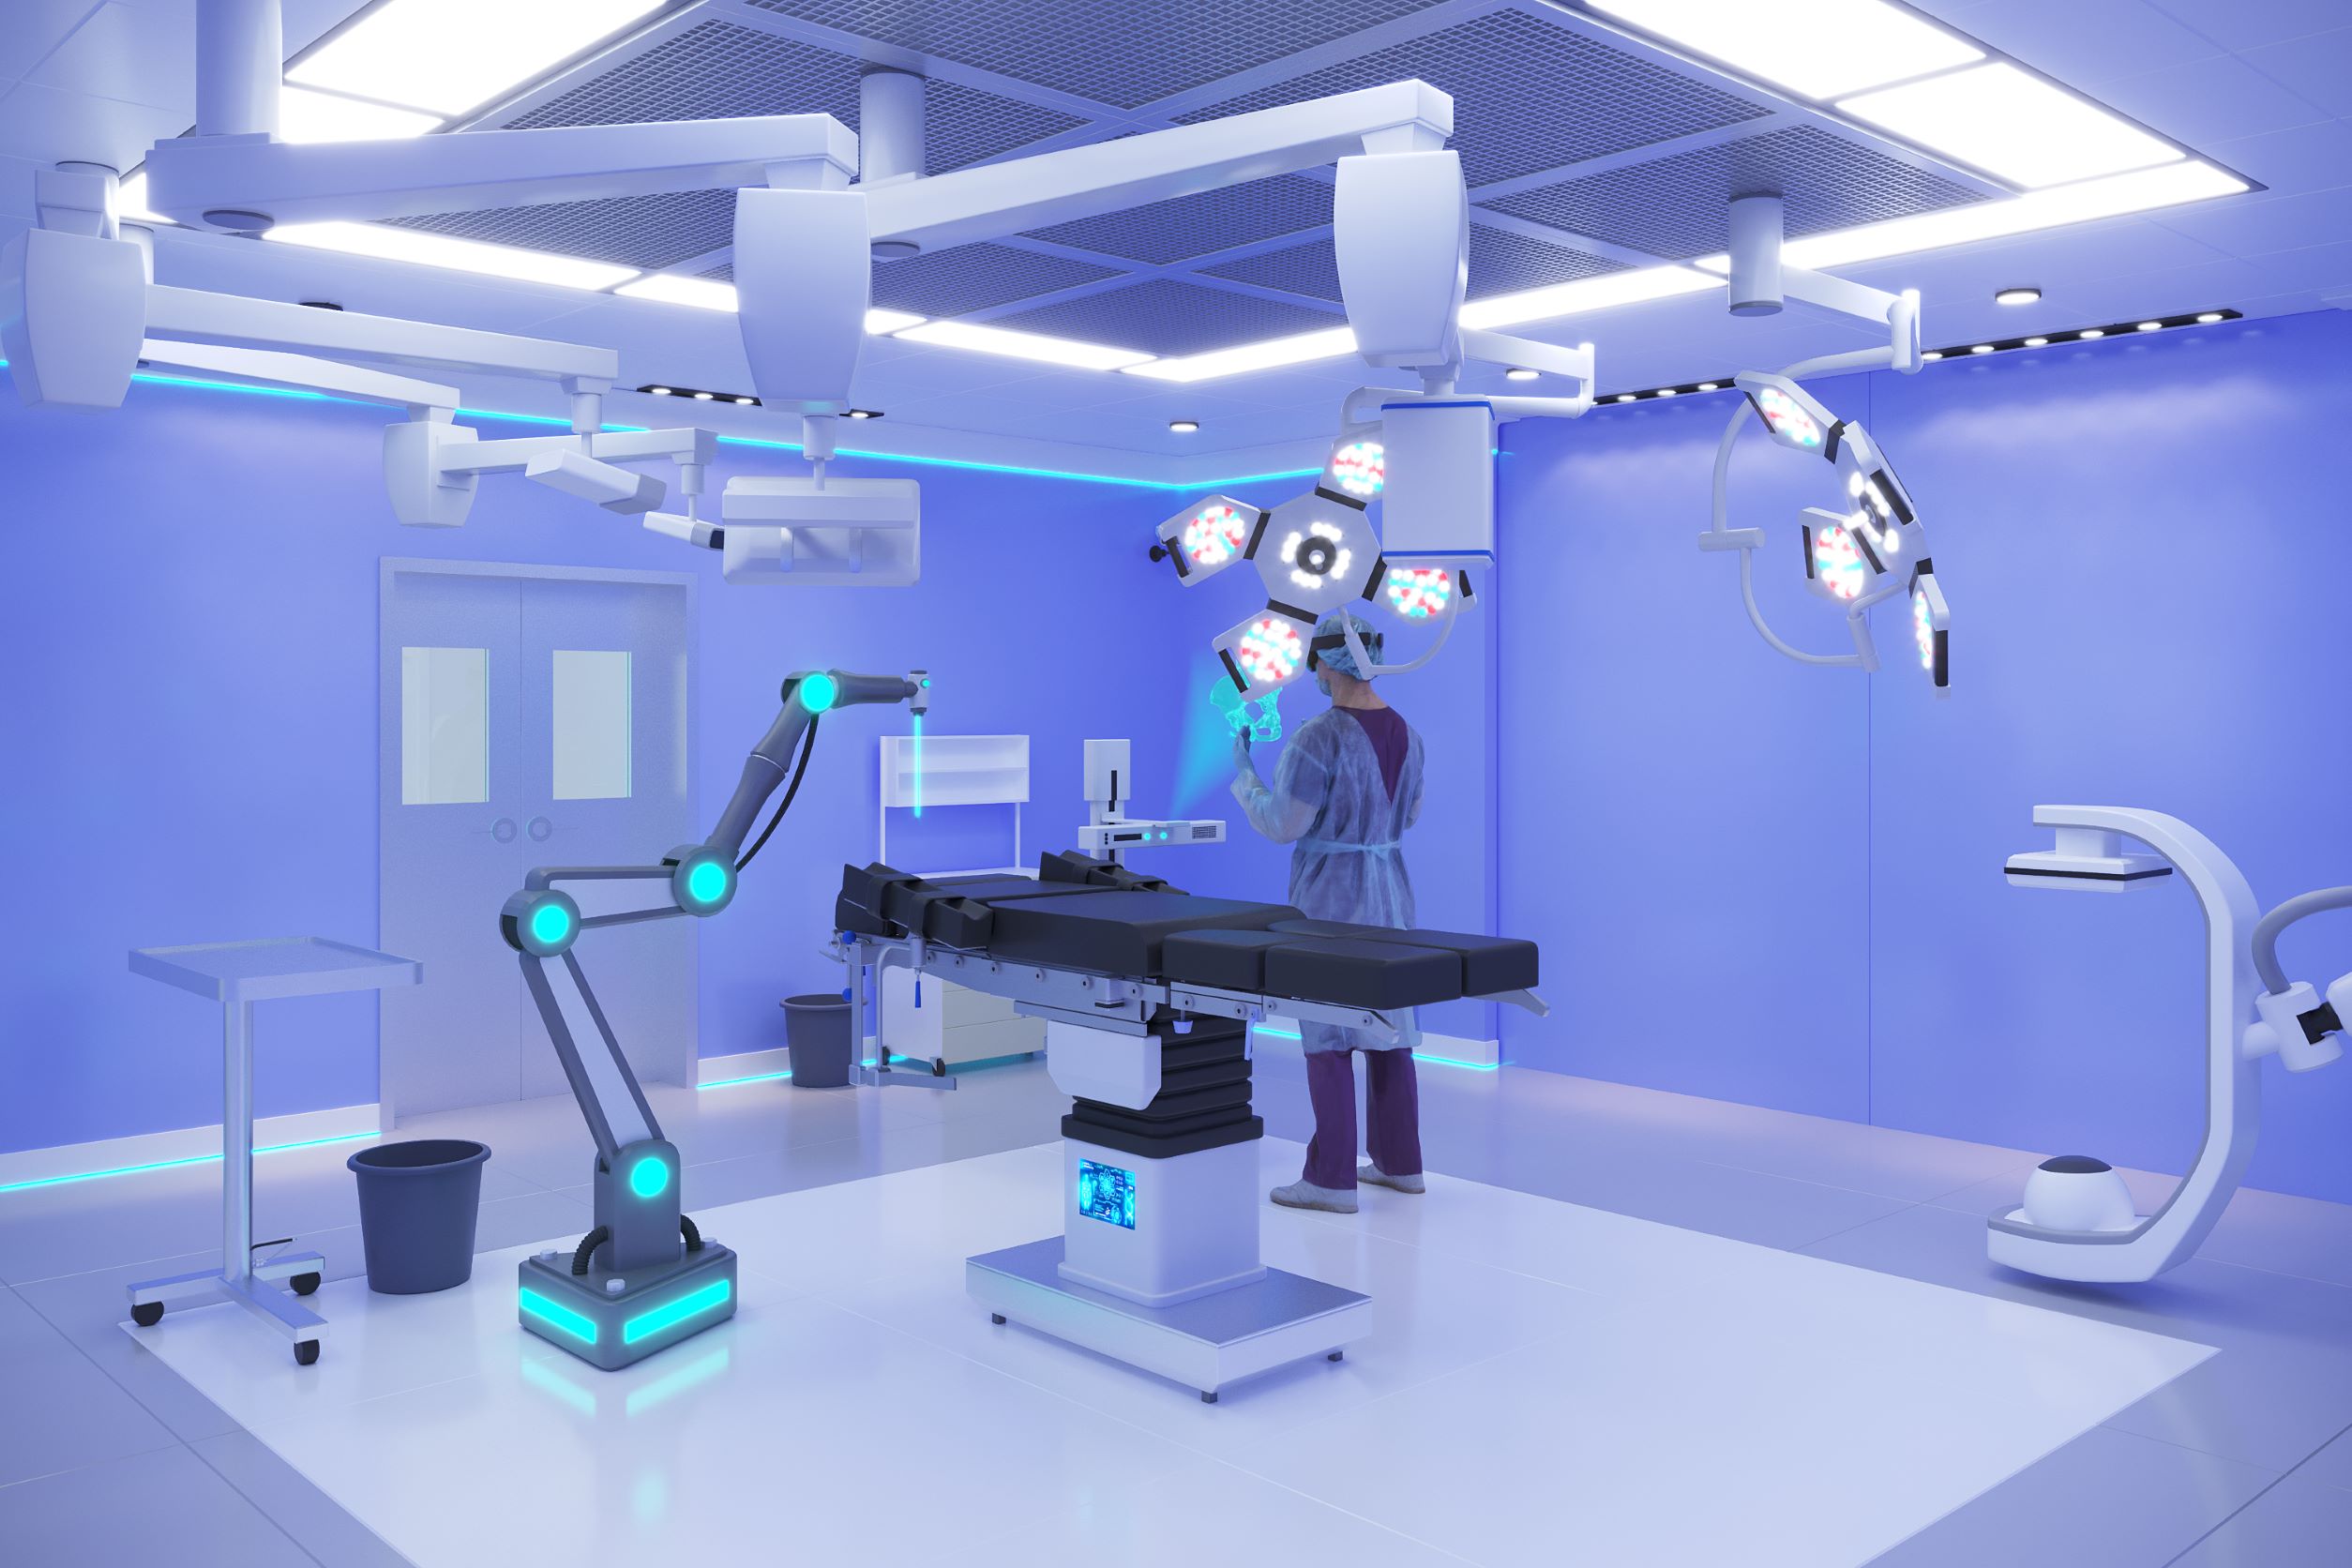 Der OR-X ist eine 1:1-Kopie eines Balgrist-Operationssaals mit modernster digitaler OP-Steuerung